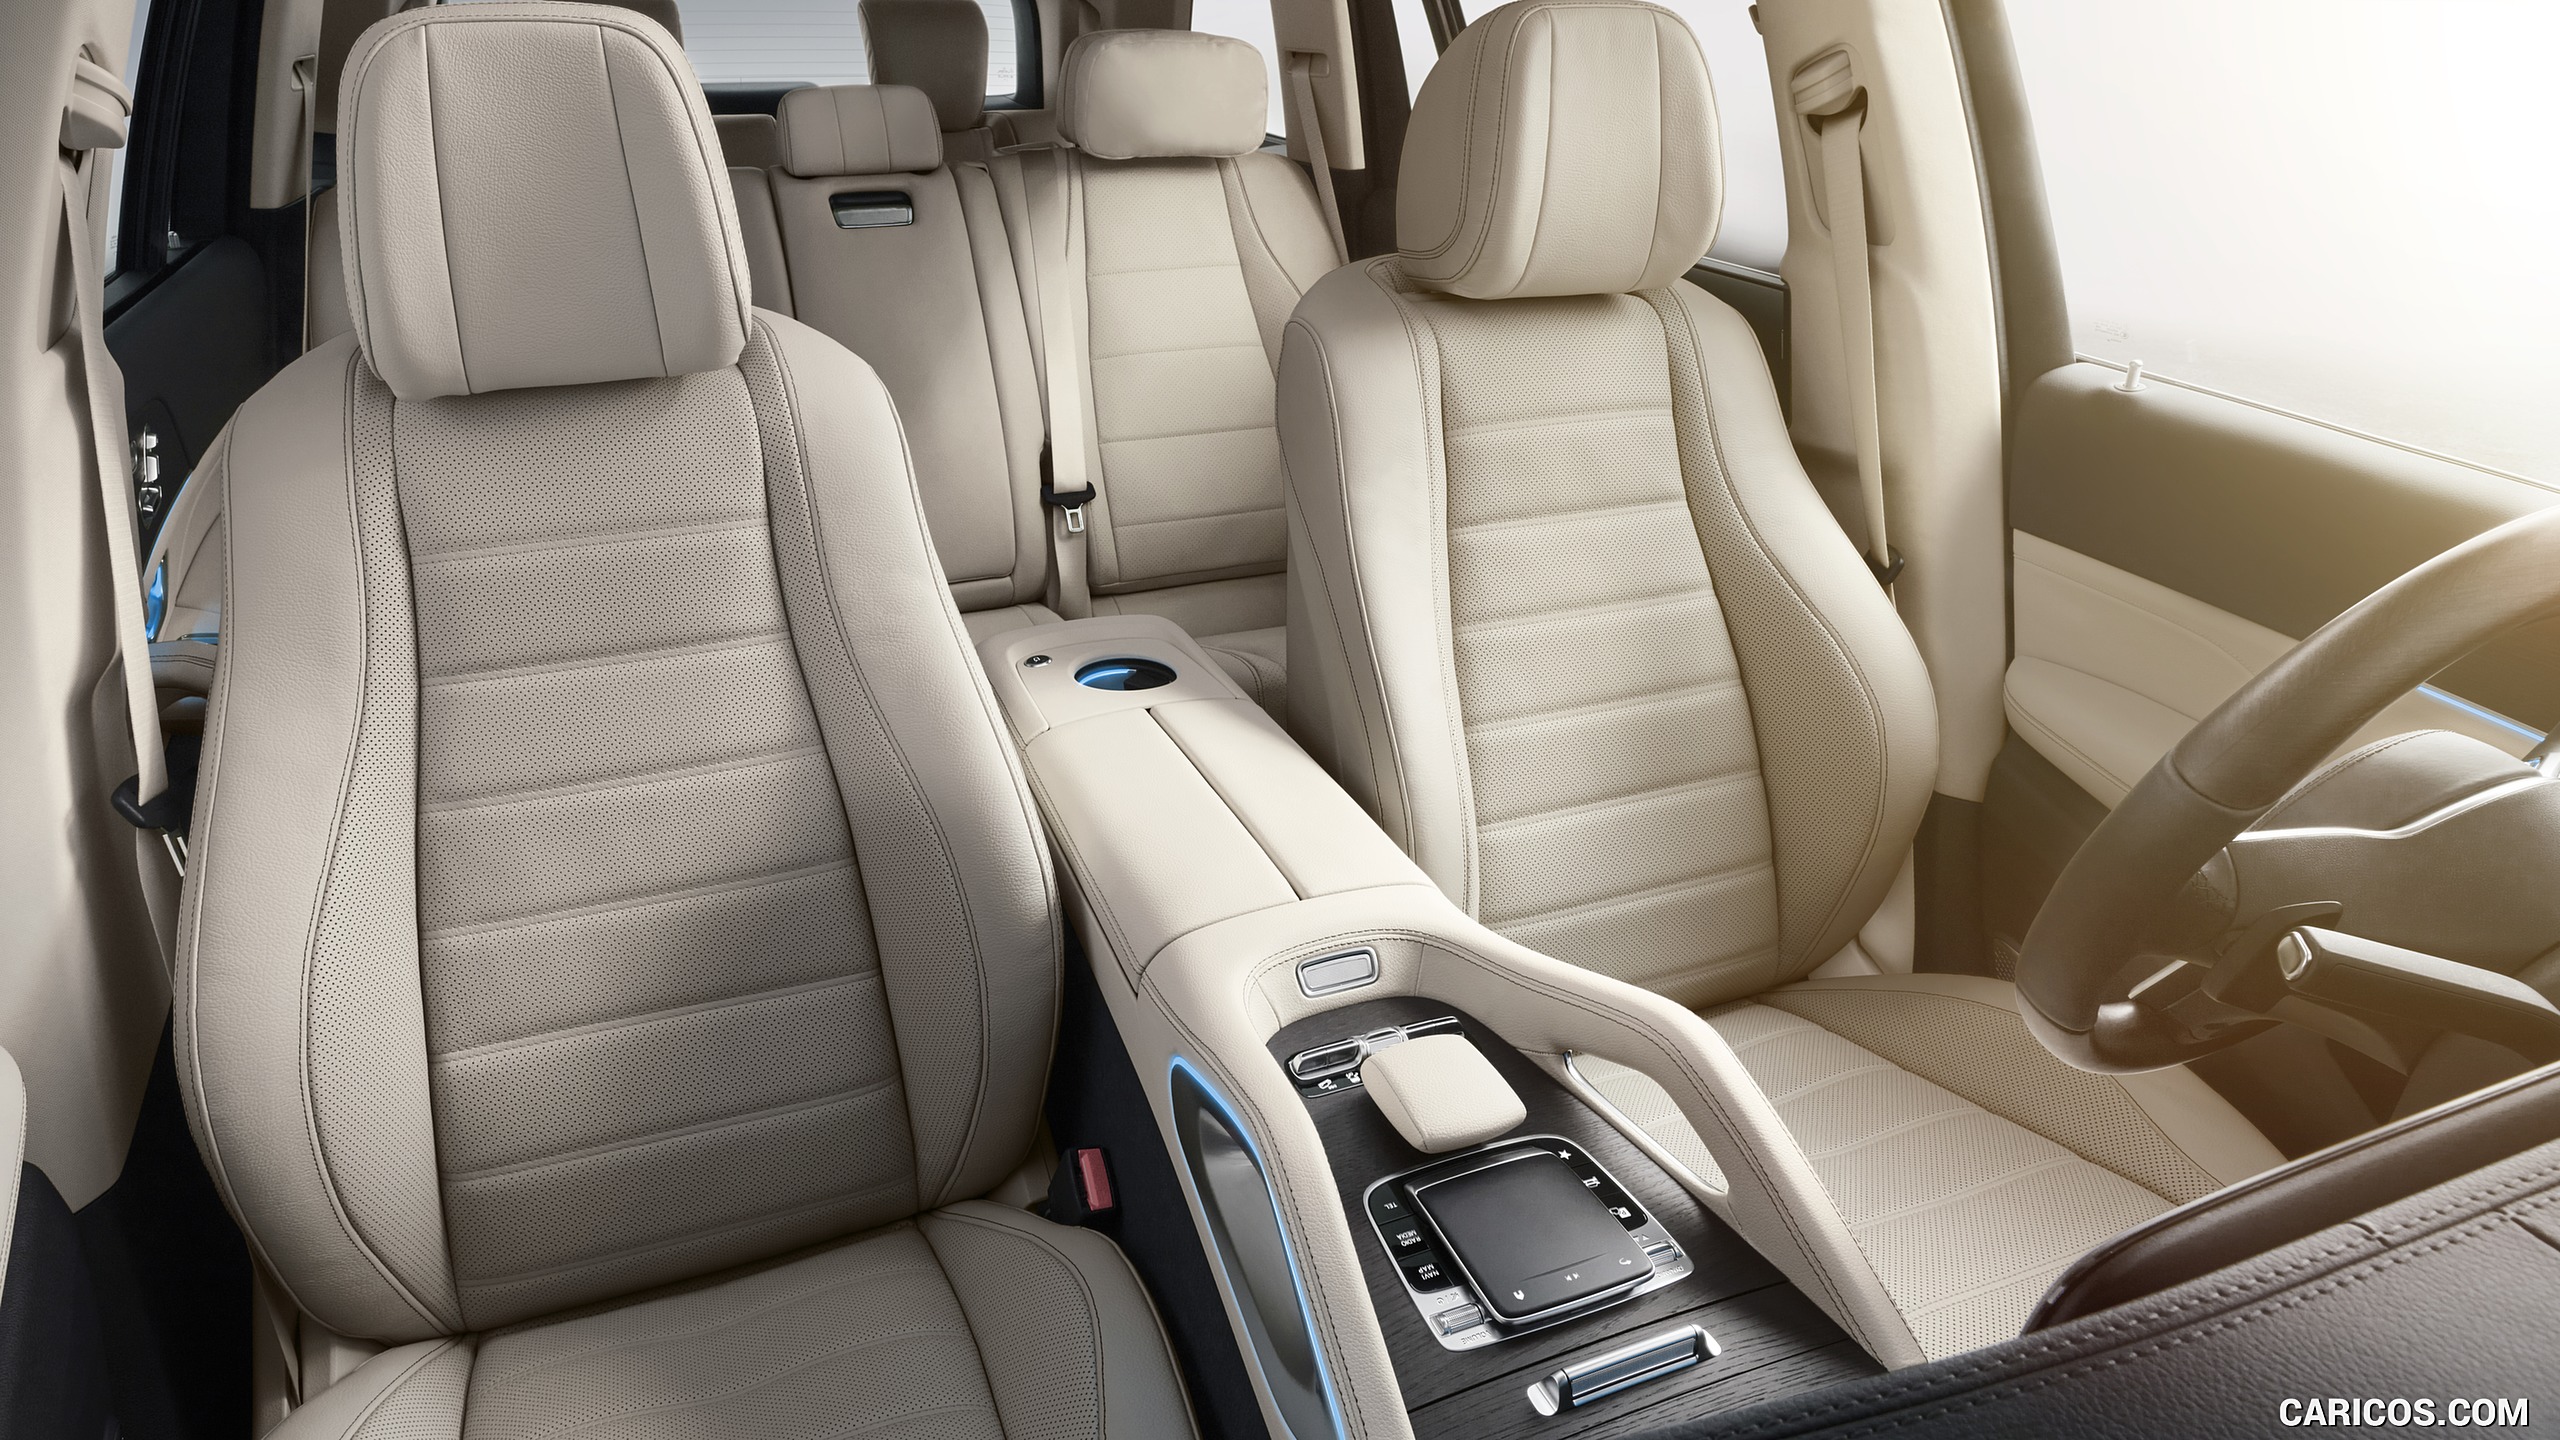 2020 Mercedes-Benz GLS - Interior, Seats, #94 of 427